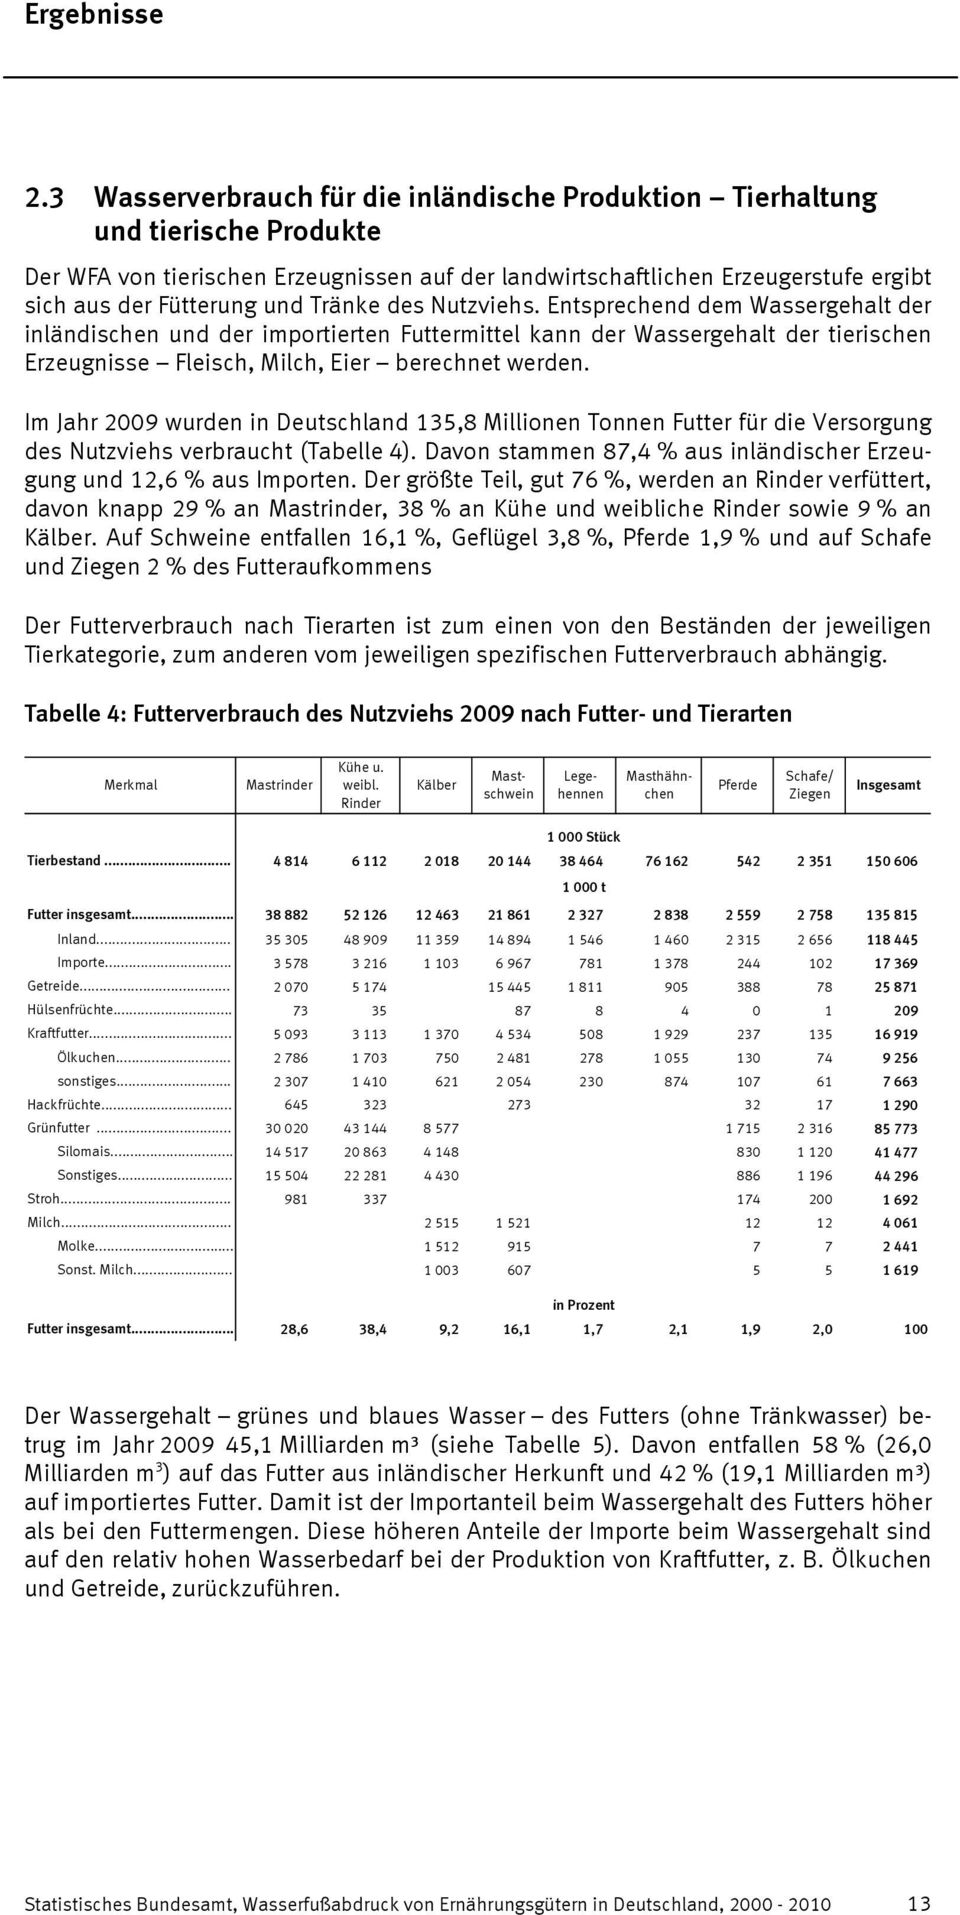 Im Jahr 2009 wurden in Deutschland 135,8 Millionen Tonnen Futter für die Versorgung des Nutzviehs verbraucht (Tabelle 4). Davon stammen 87,4 % aus inländischer Erzeugung und 12,6 % aus Importen.